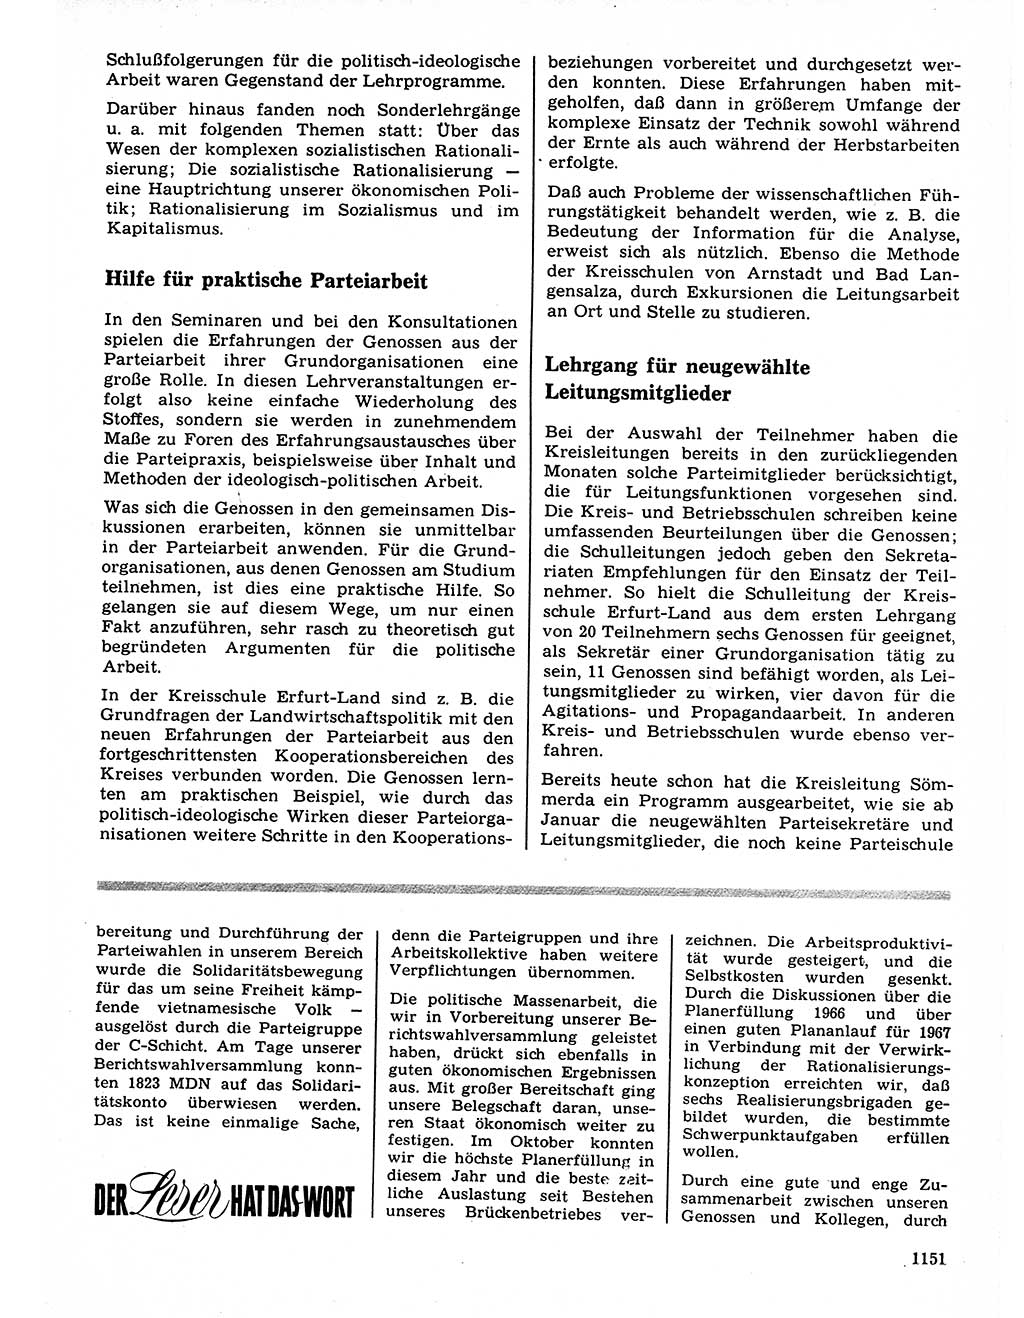 Neuer Weg (NW), Organ des Zentralkomitees (ZK) der SED (Sozialistische Einheitspartei Deutschlands) für Fragen des Parteilebens, 21. Jahrgang [Deutsche Demokratische Republik (DDR)] 1966, Seite 1151 (NW ZK SED DDR 1966, S. 1151)